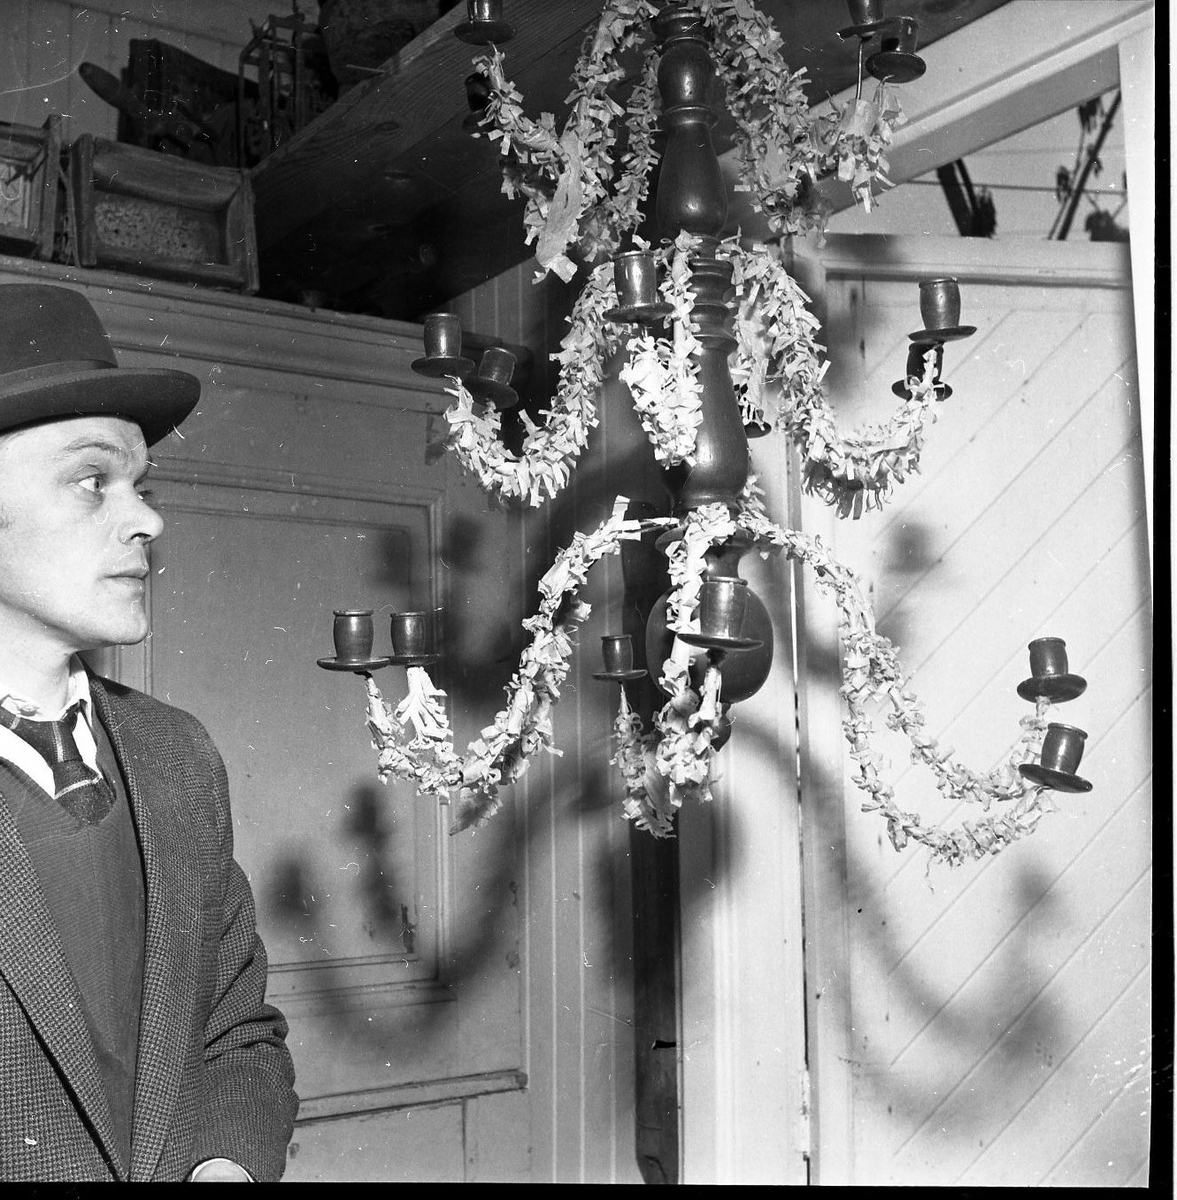 En man med hatt står vid en upphängd med fransat papper dekorerad ljuskrona.